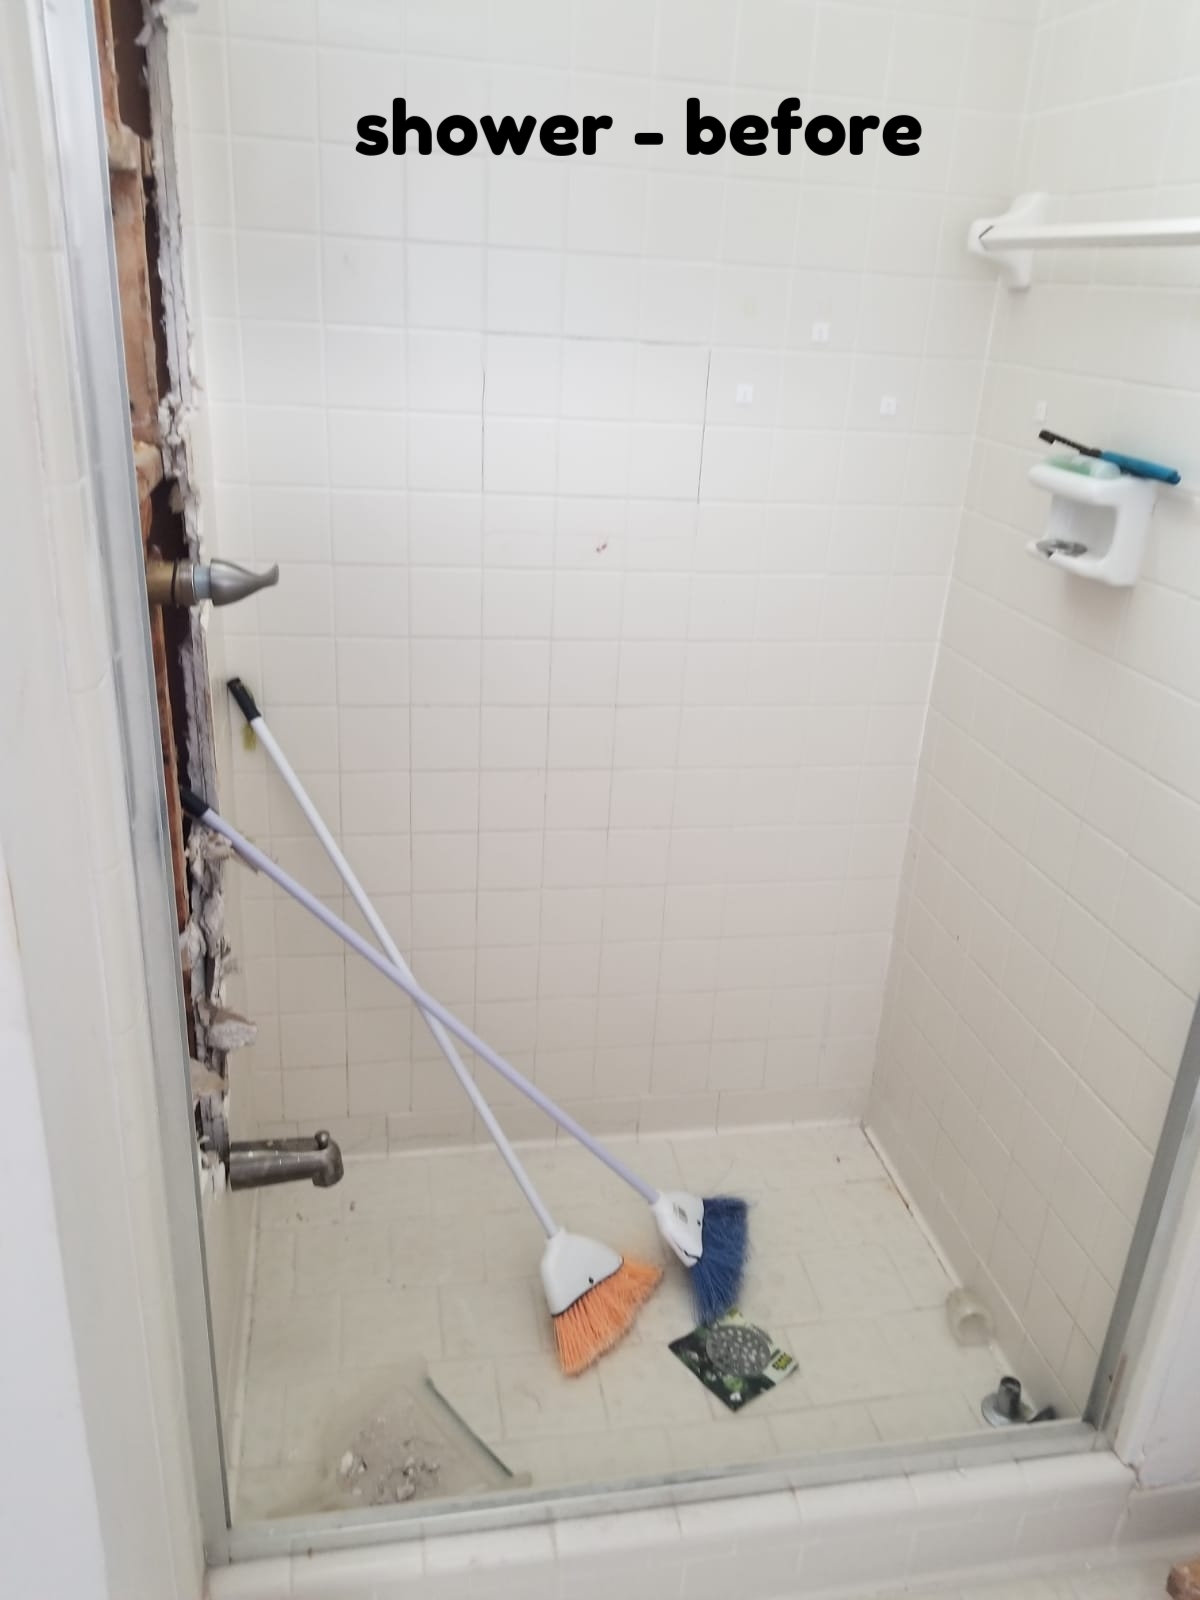 shower - before.jpg